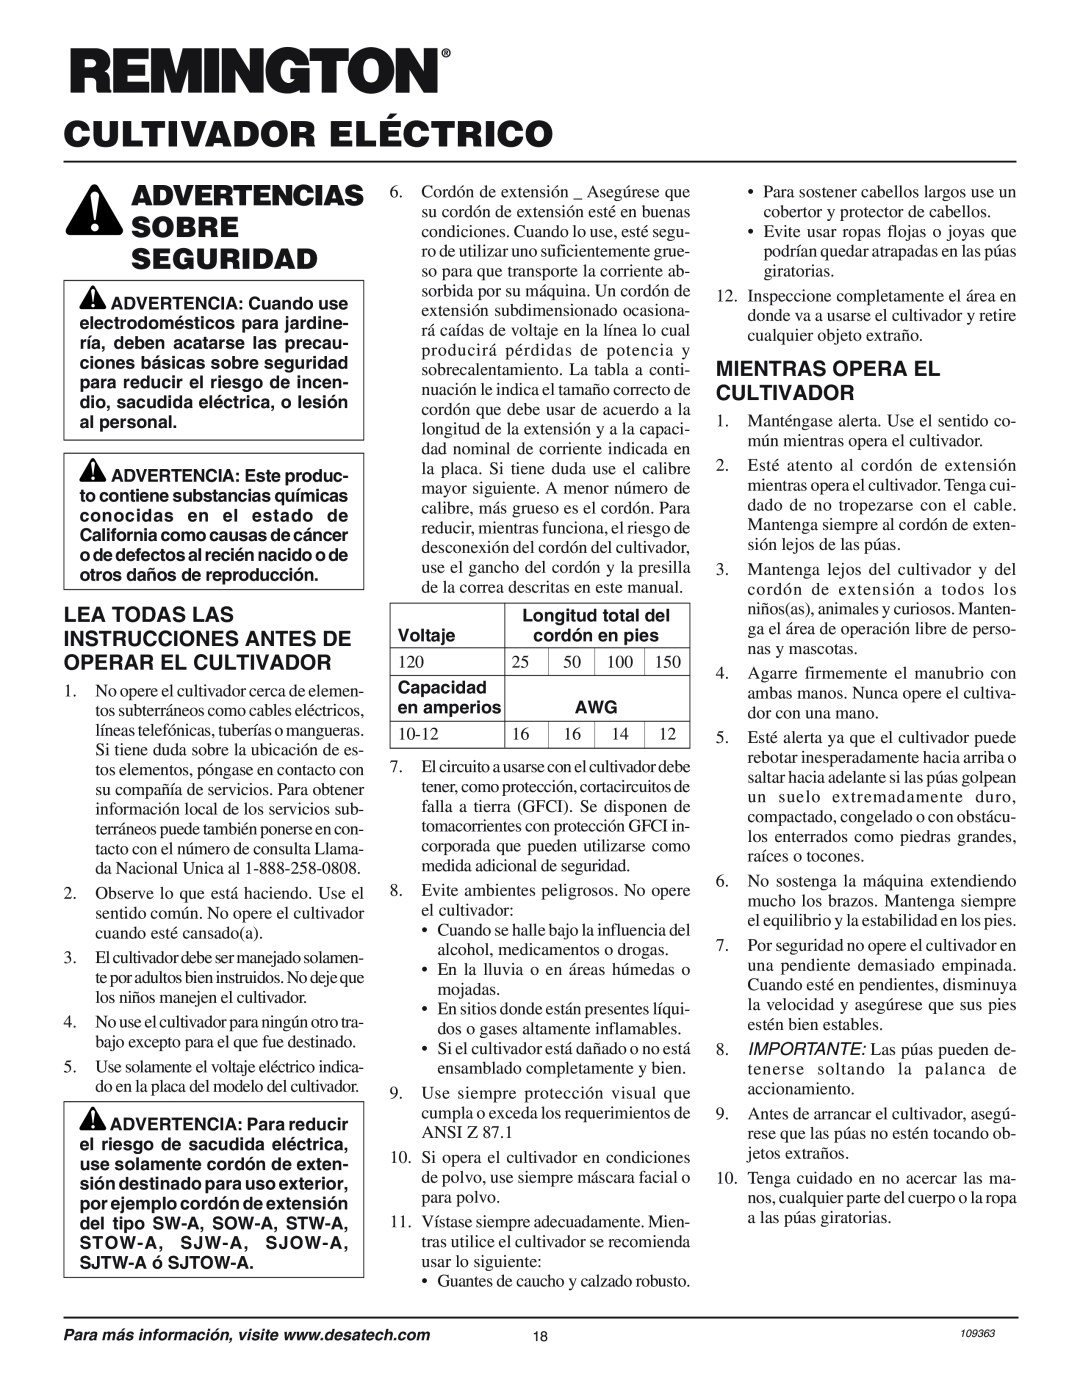 Remington 109312-01 Cultivador Eléctrico, Advertencias Sobre Seguridad, Mientras Opera El Cultivador, Longitud total del 